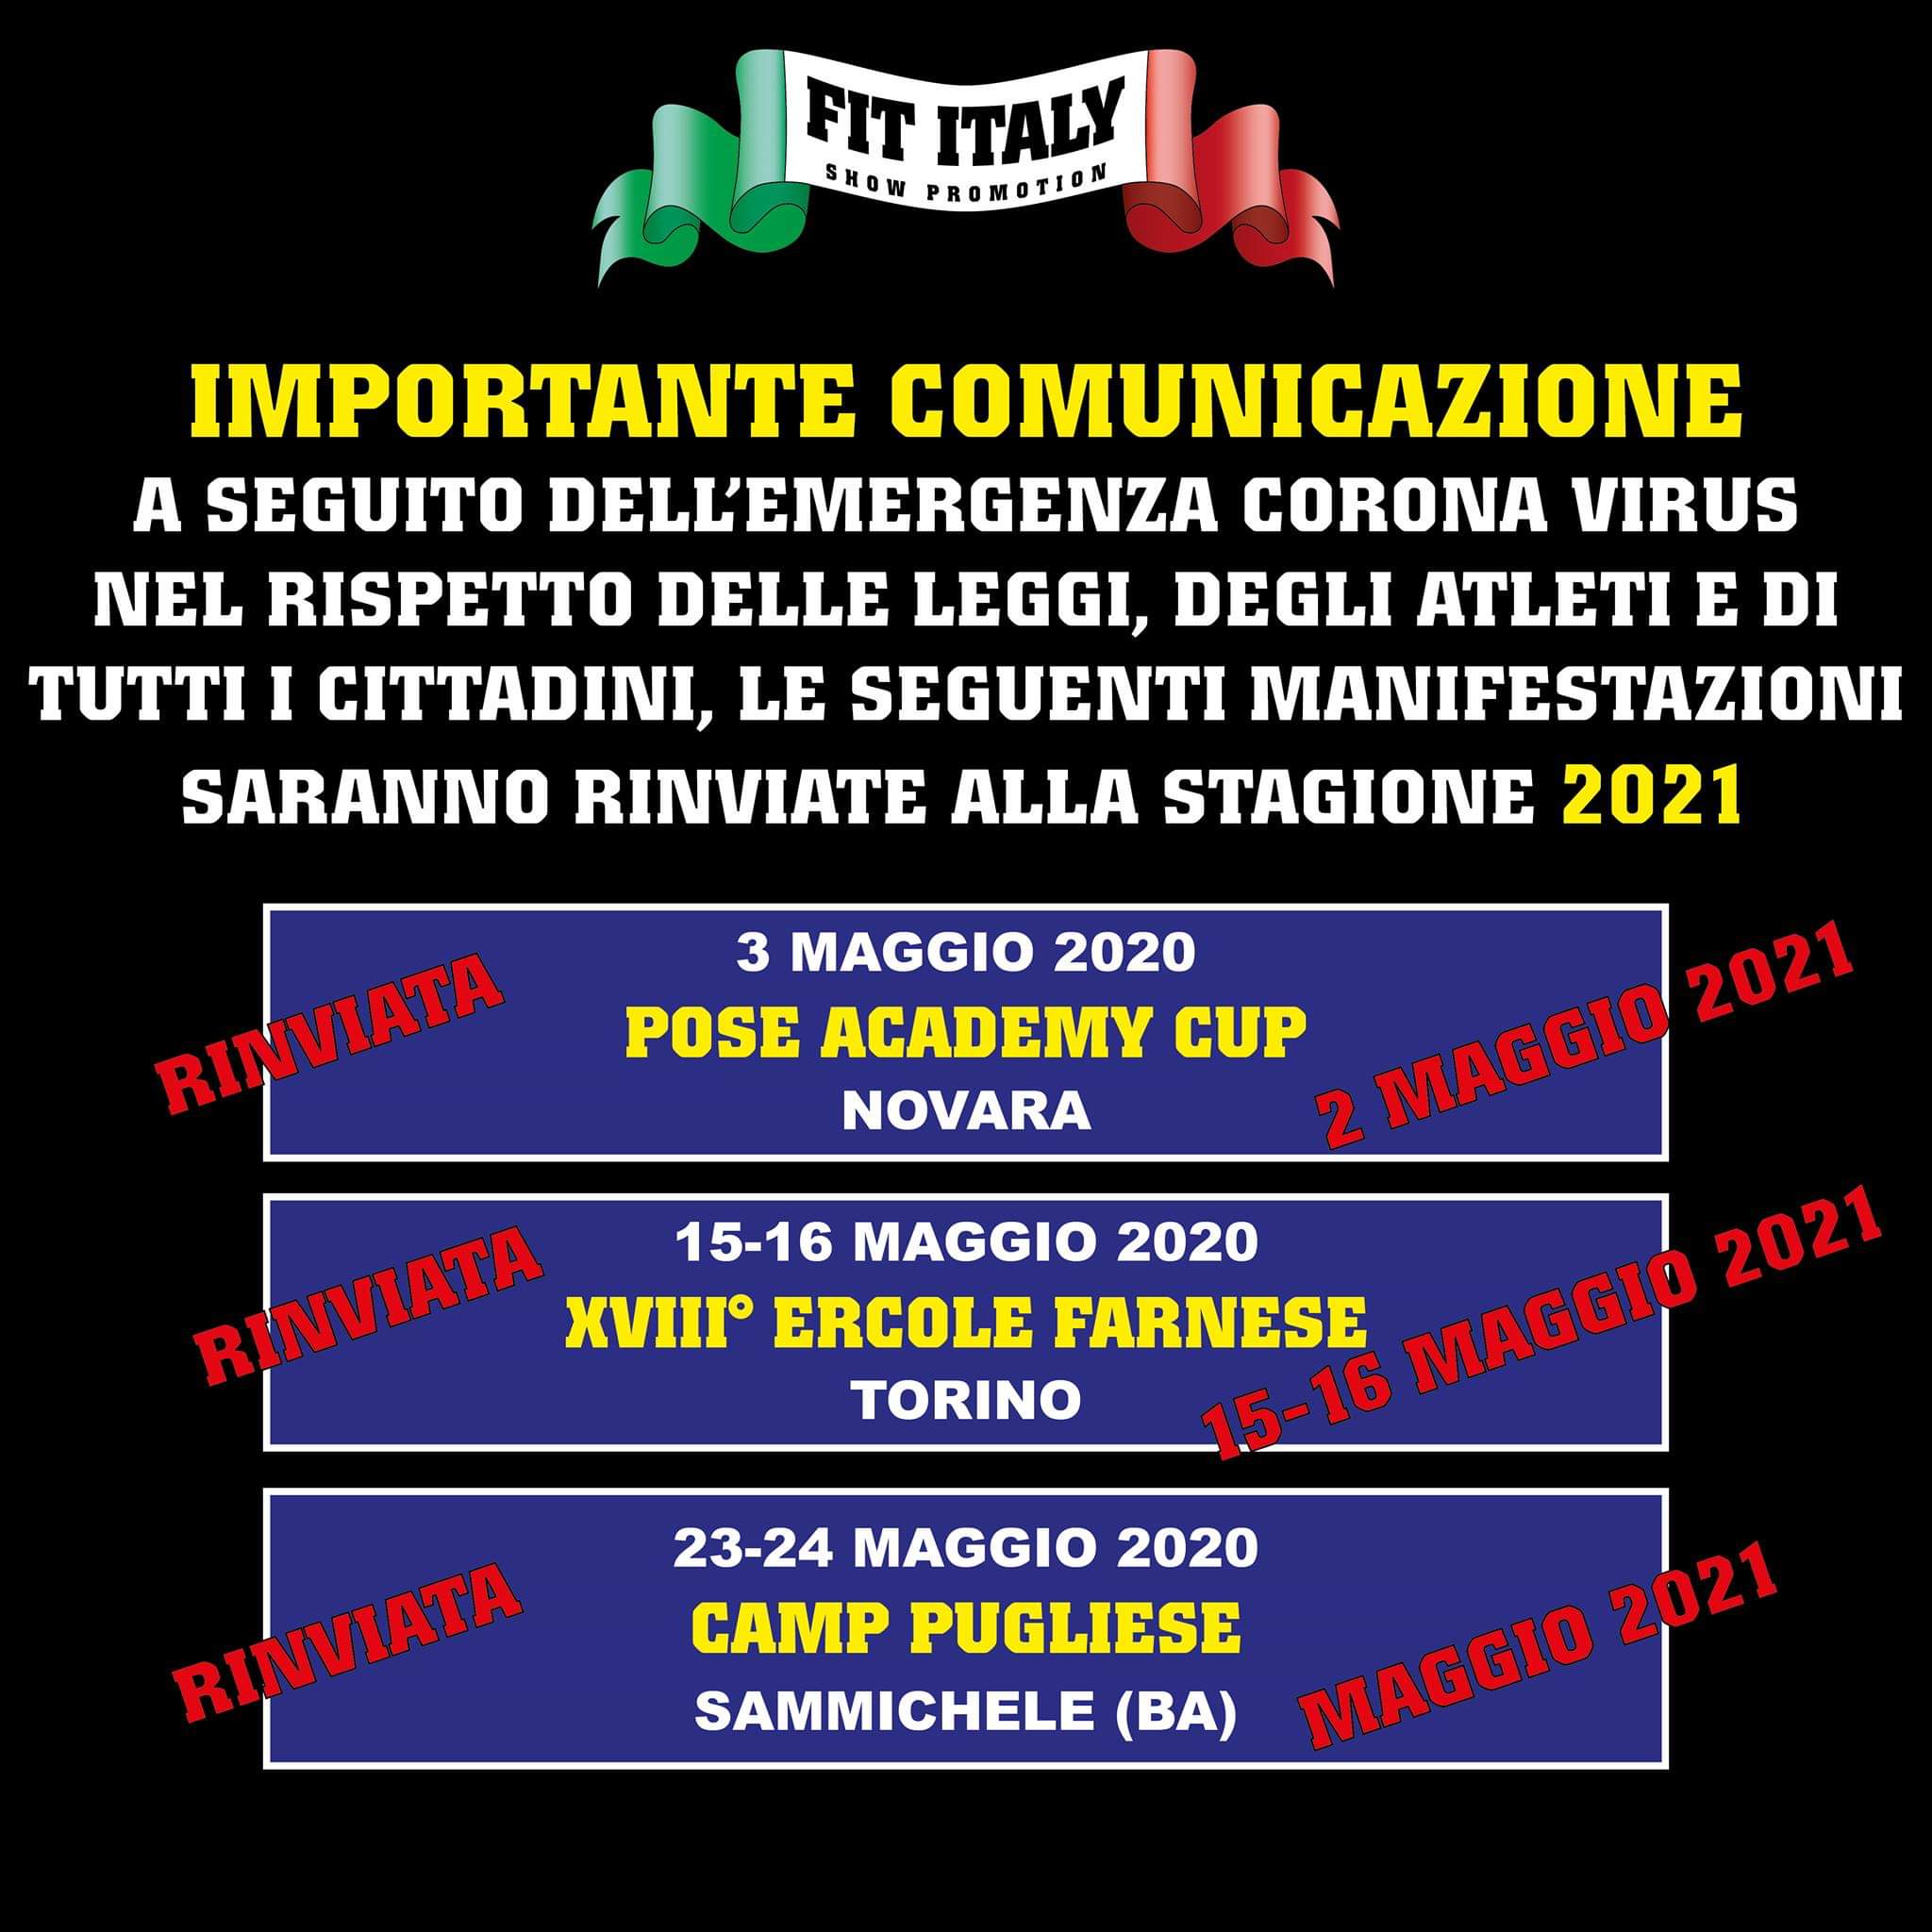 ifbb italia eventi cancellati 2020